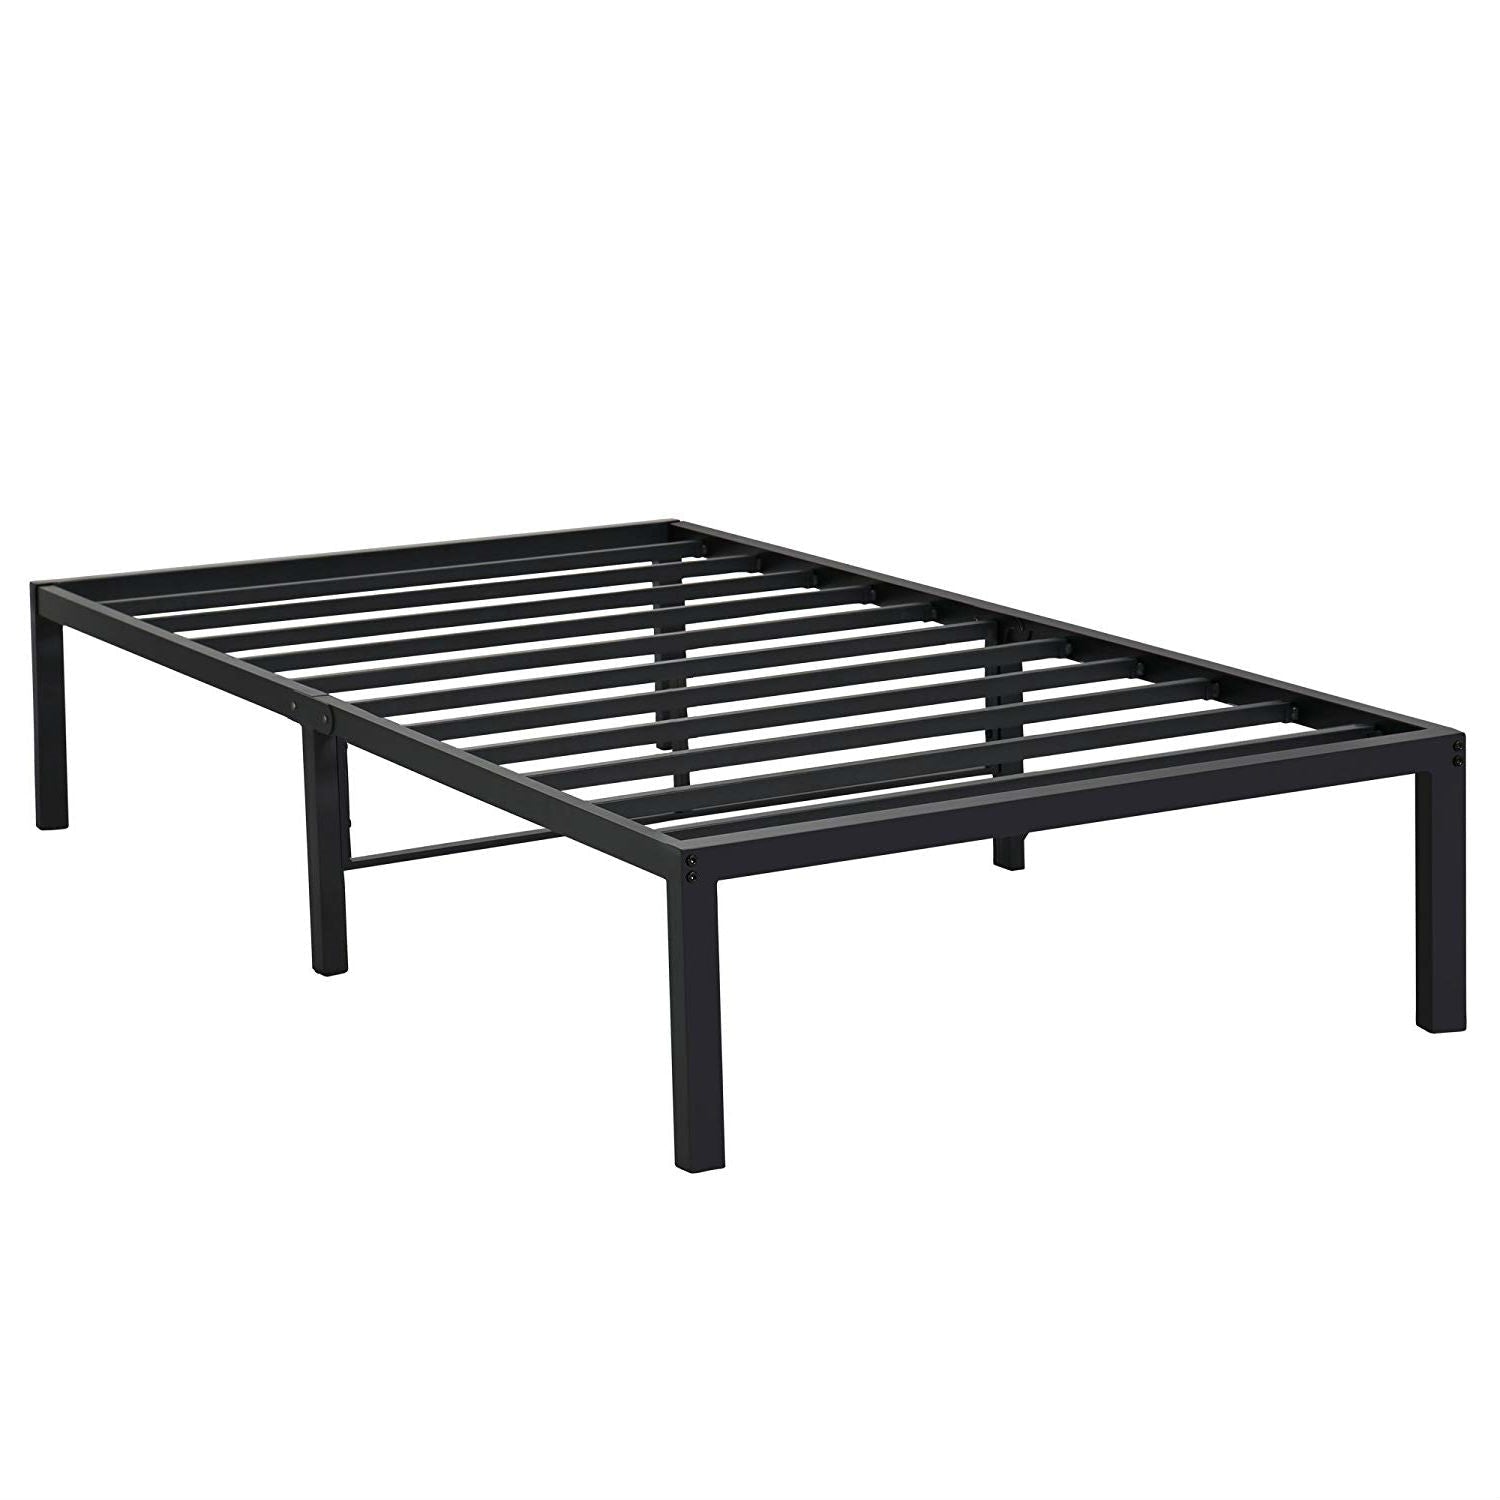 Bedroom > Bed Frames > Platform Beds - Twin XL Size Heavy Duty Black Metal Platform Bed Frame